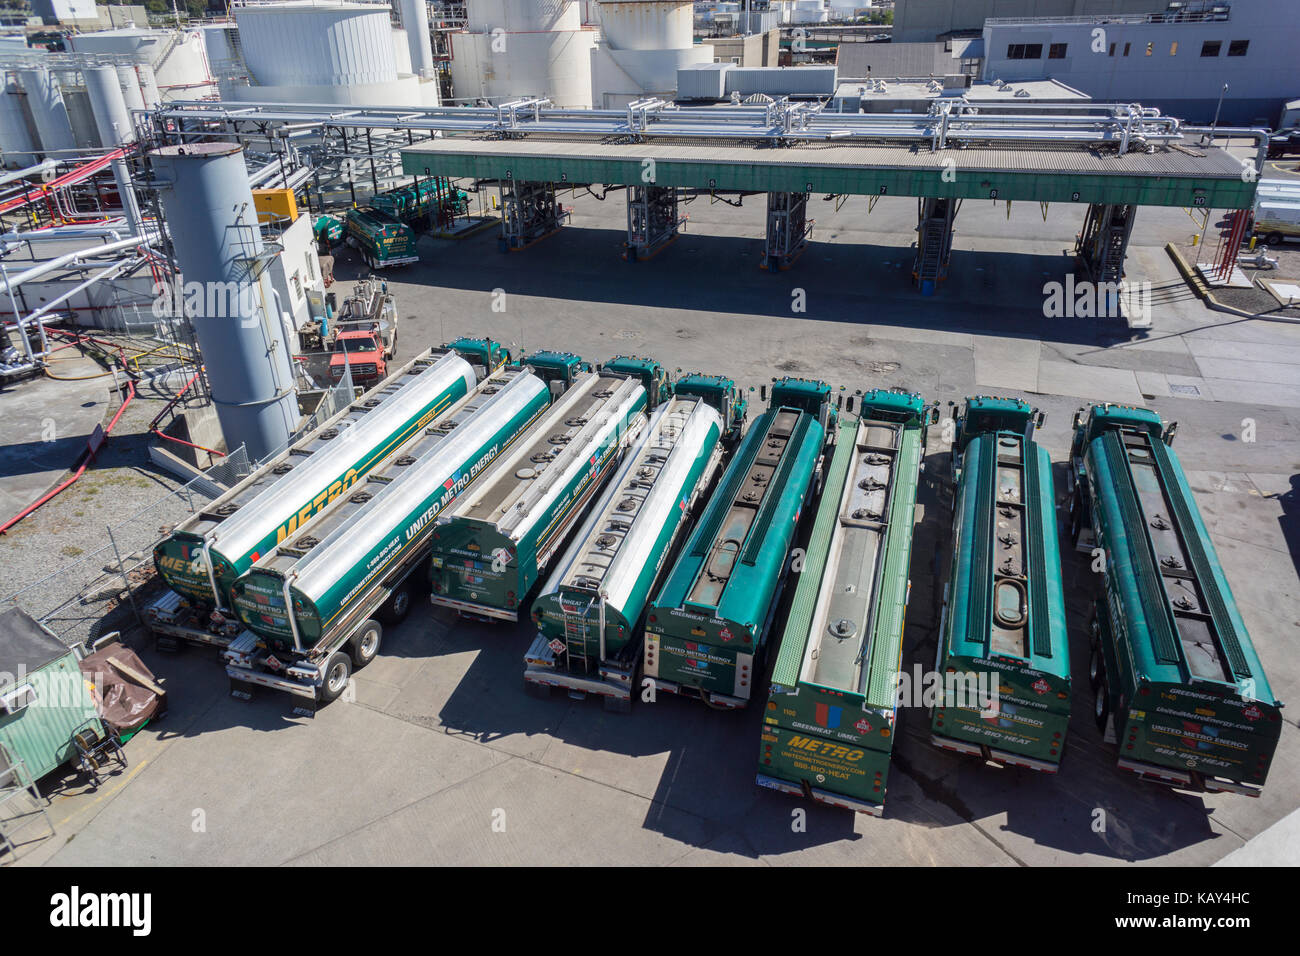 Les navires-citernes de livraison stationné dans un dépôt de carburant dans le quartier Greenpoint industrielle de Brooklyn à New York, le samedi 23 septembre, 2017. (© Richard B. Levine) Banque D'Images